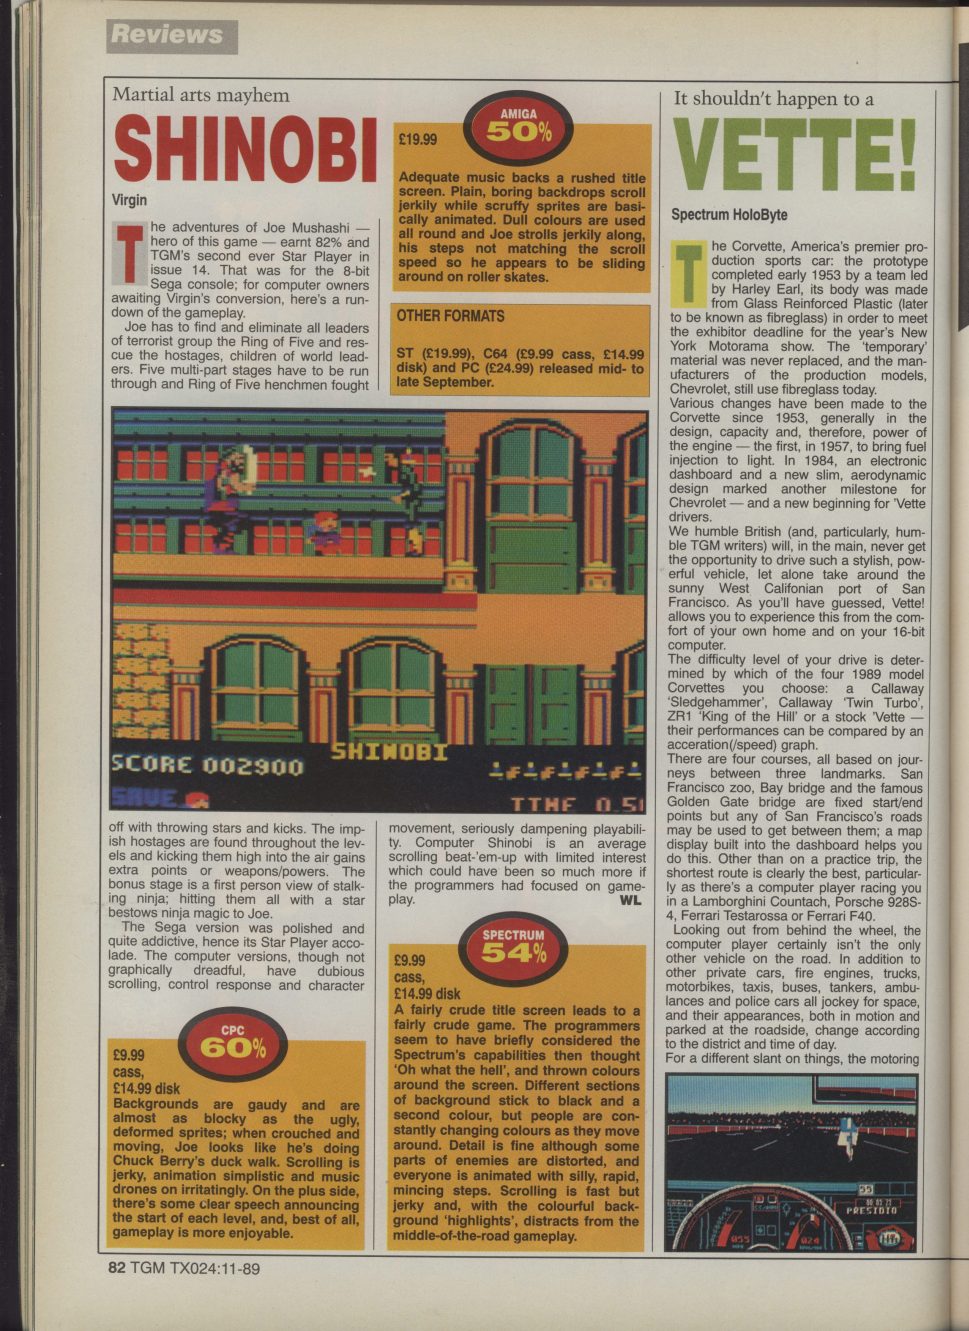 the_games_machine_n.24_novembre_1989_pag.82.jpg